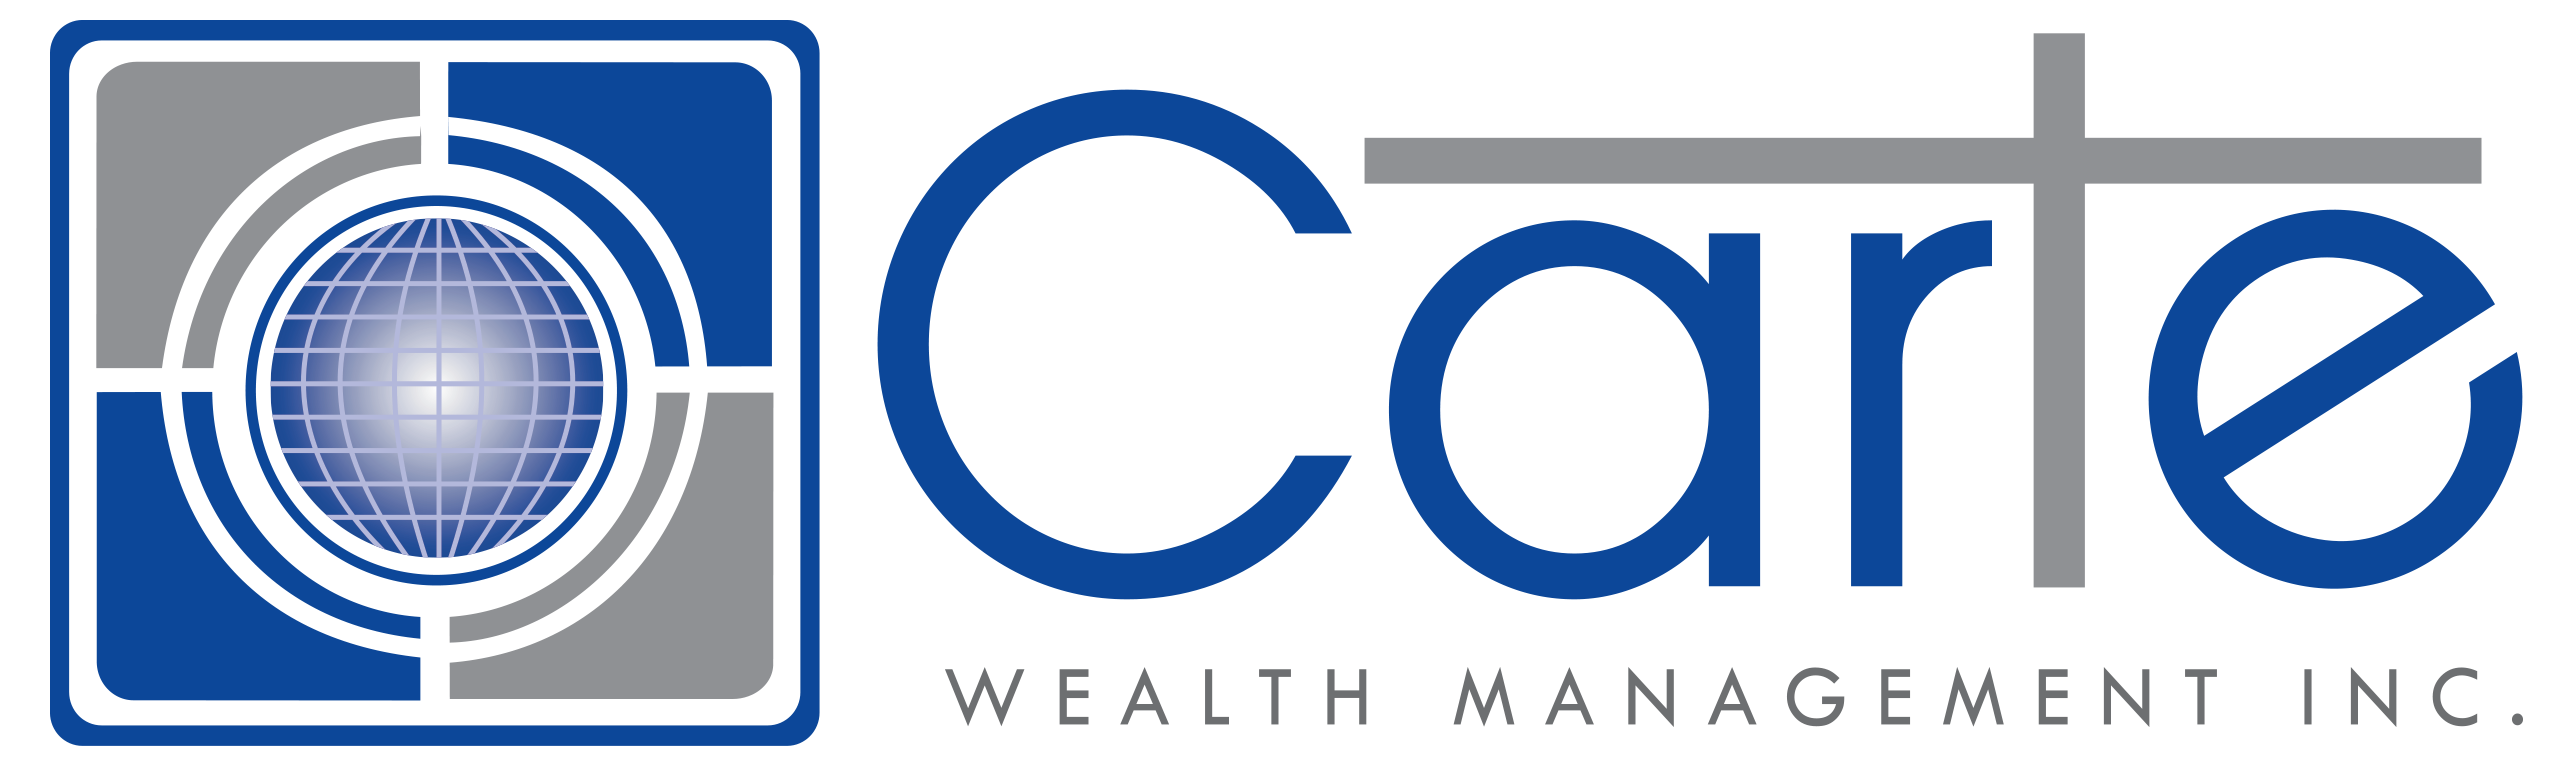 Carte Wealth Management Inc.